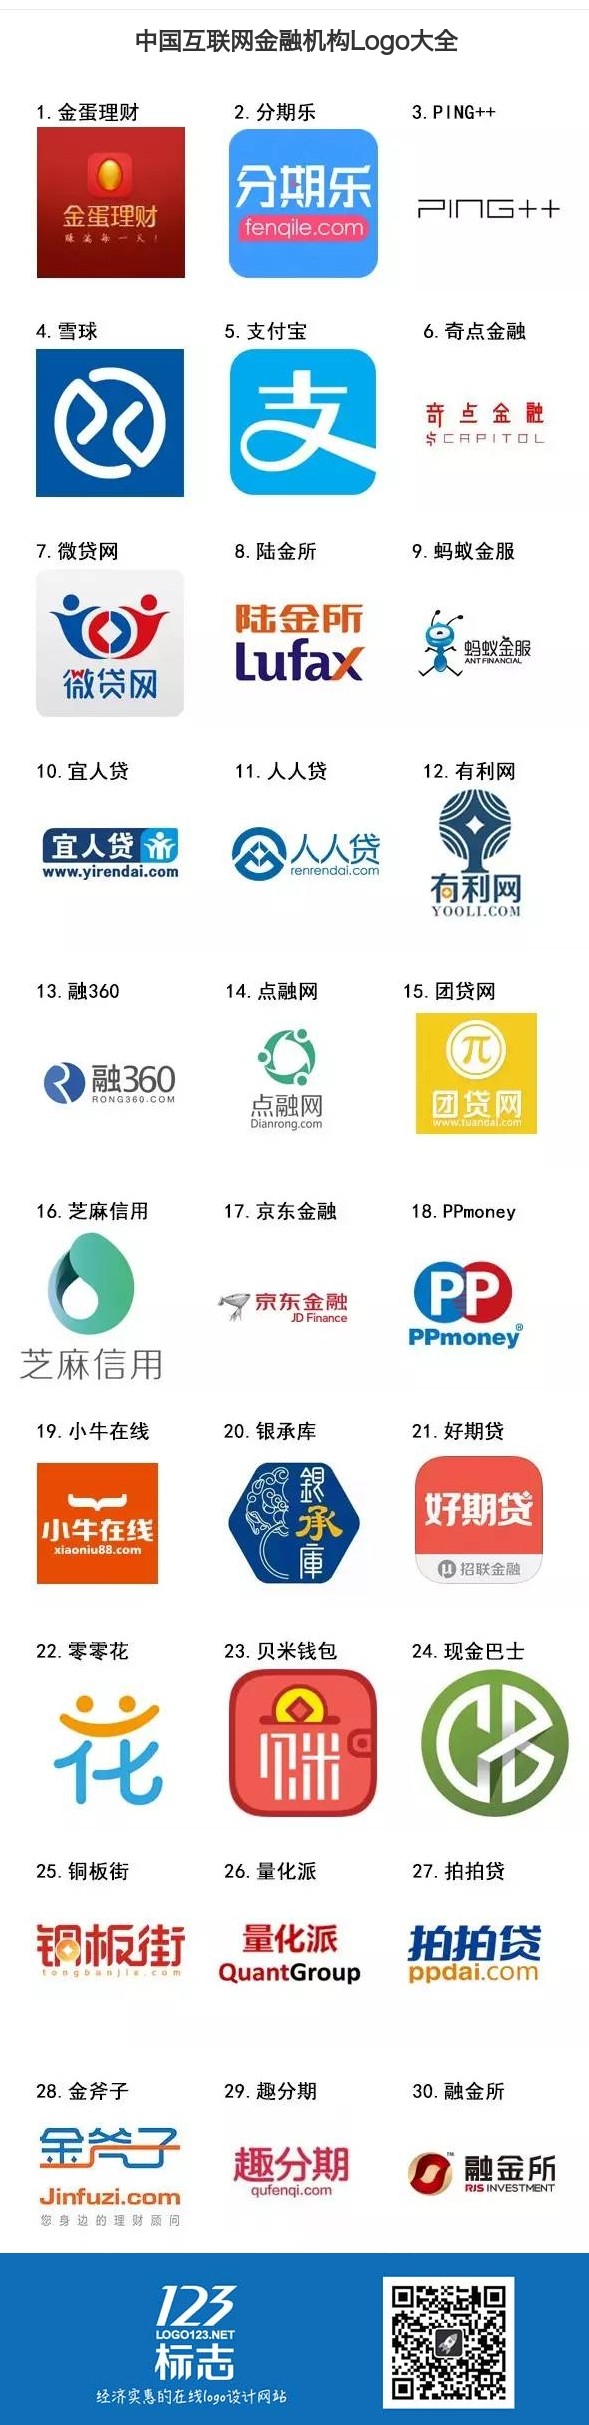 中国互联网金融机构Logo大全